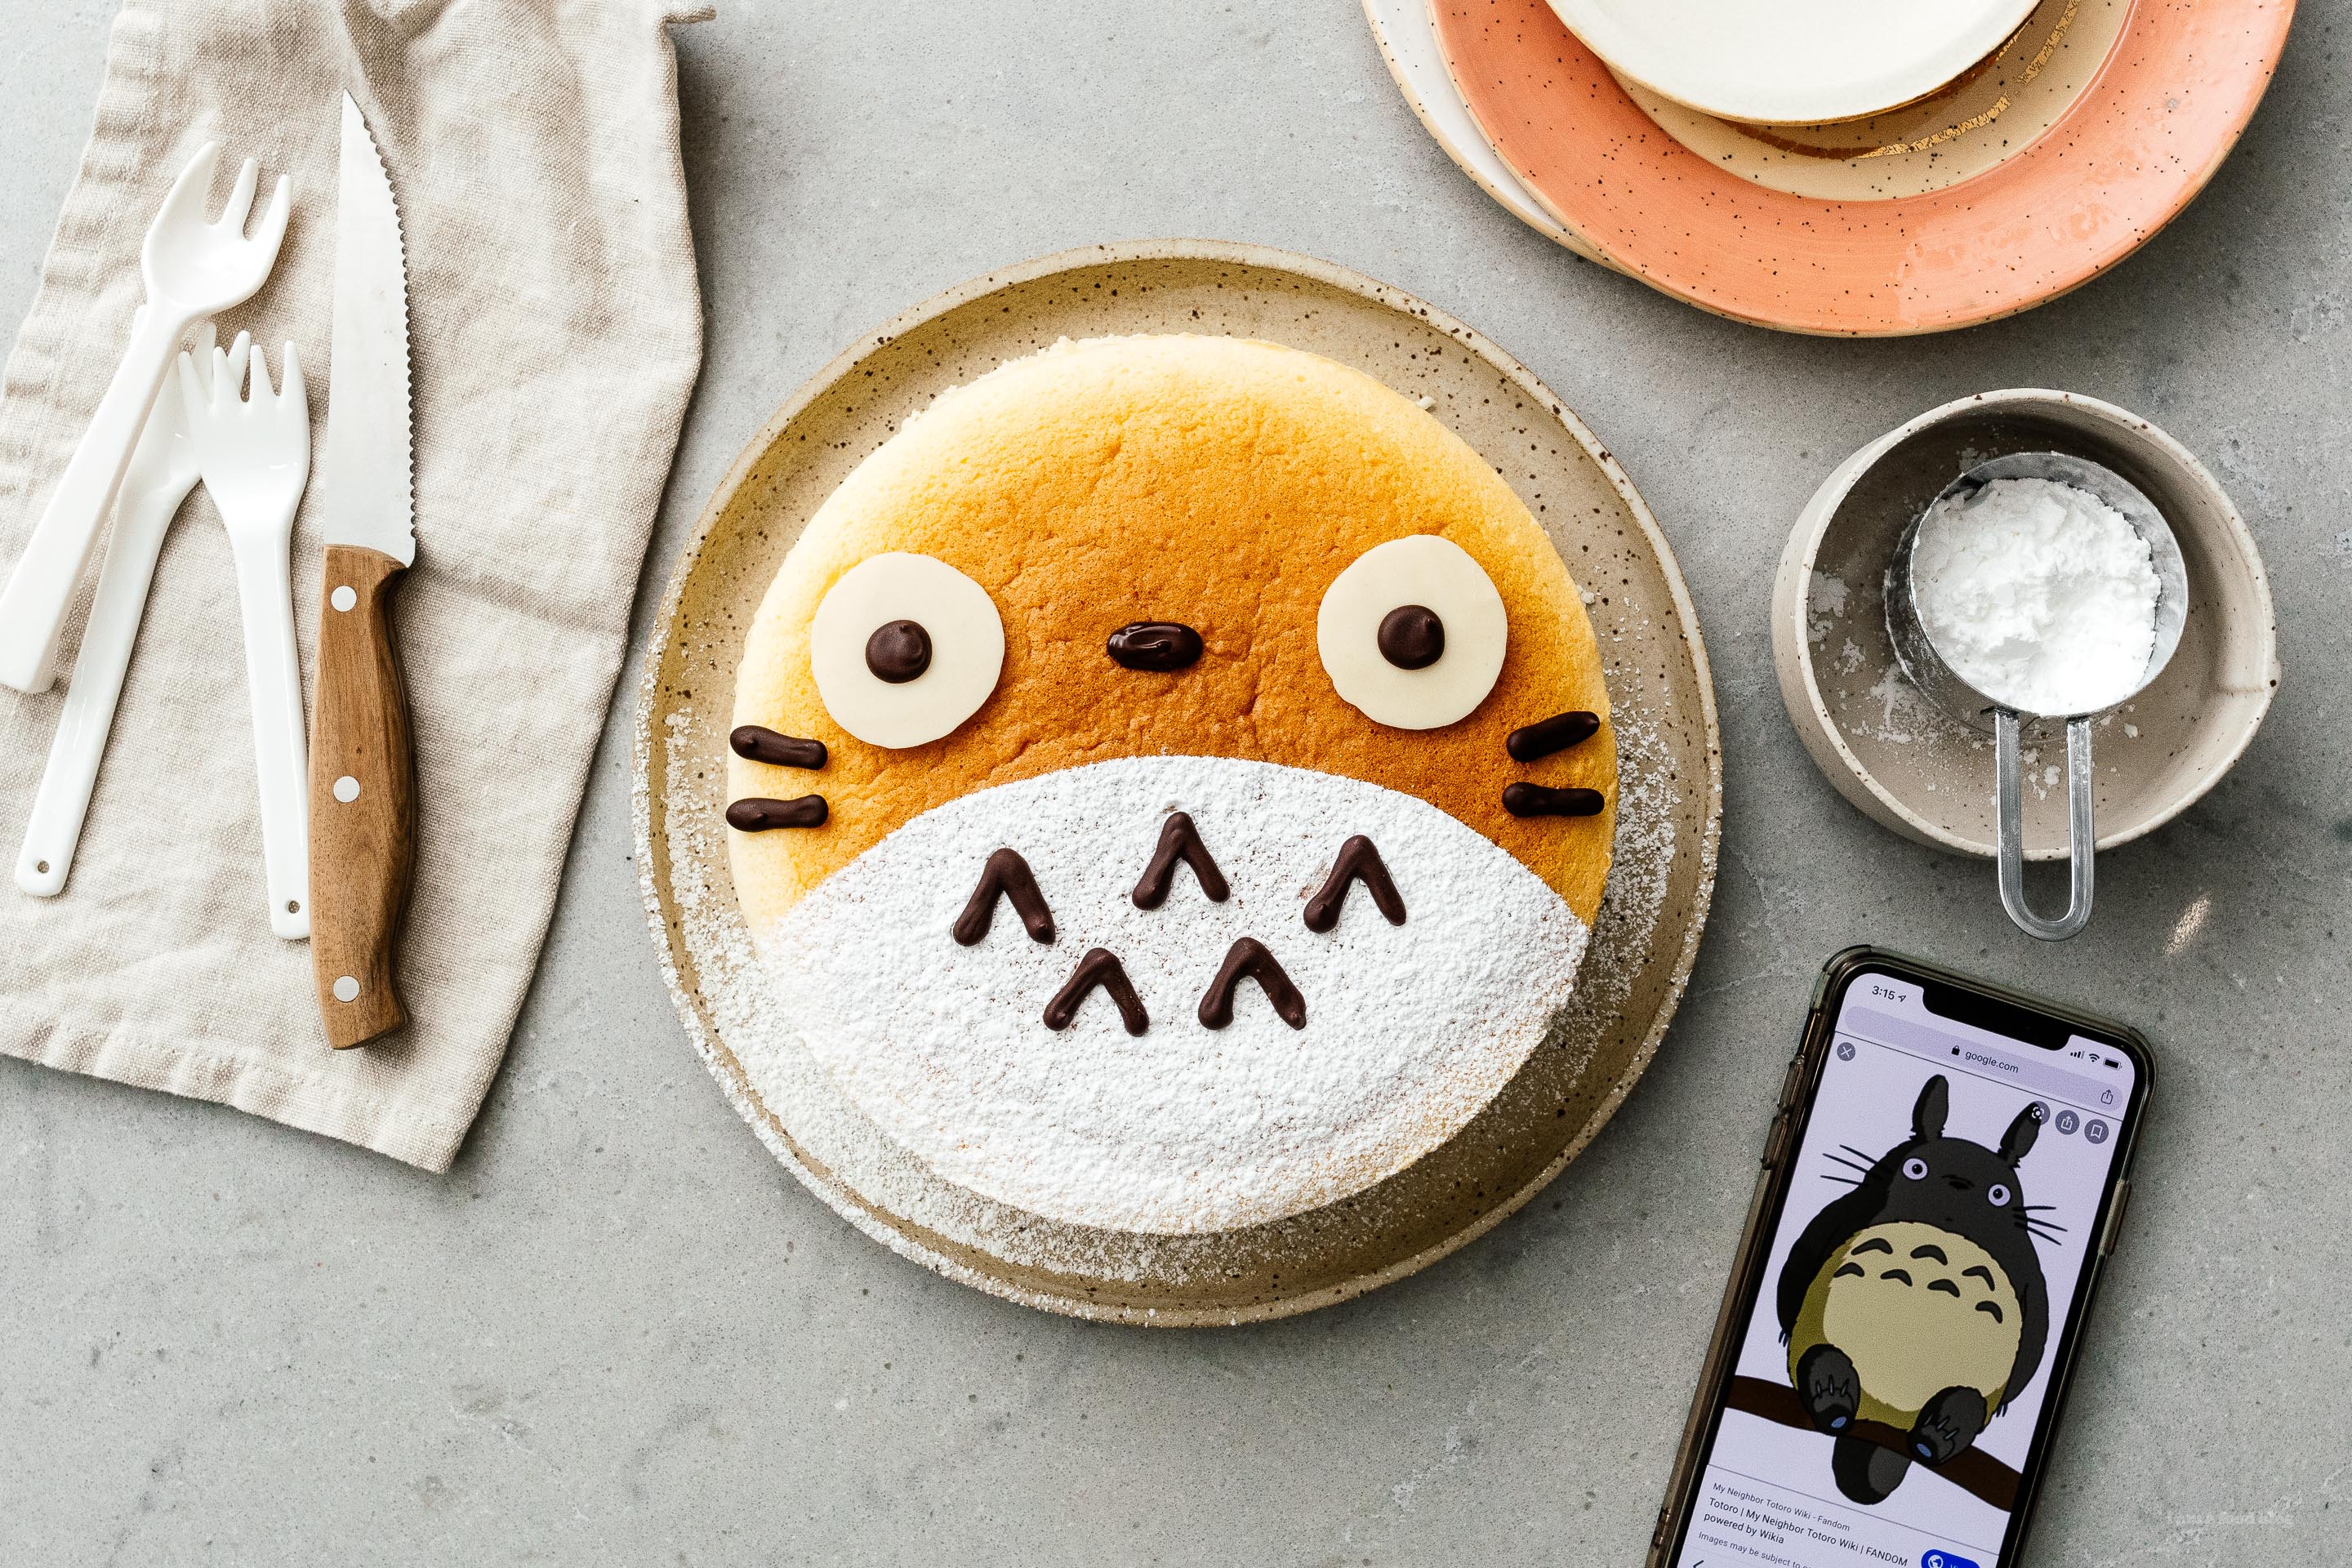 E Super Cute, Chewy Totoro Cheesecake - E mëllen, chewy Kéisekuch dee liicht ass wéi d'Loft mat just engem Hiweis vu Séissegkeet. #cheesecake #japanesecheesecake #fluffycheesecake #totorocake #totorocheesecake #totorofood #kawaiifood